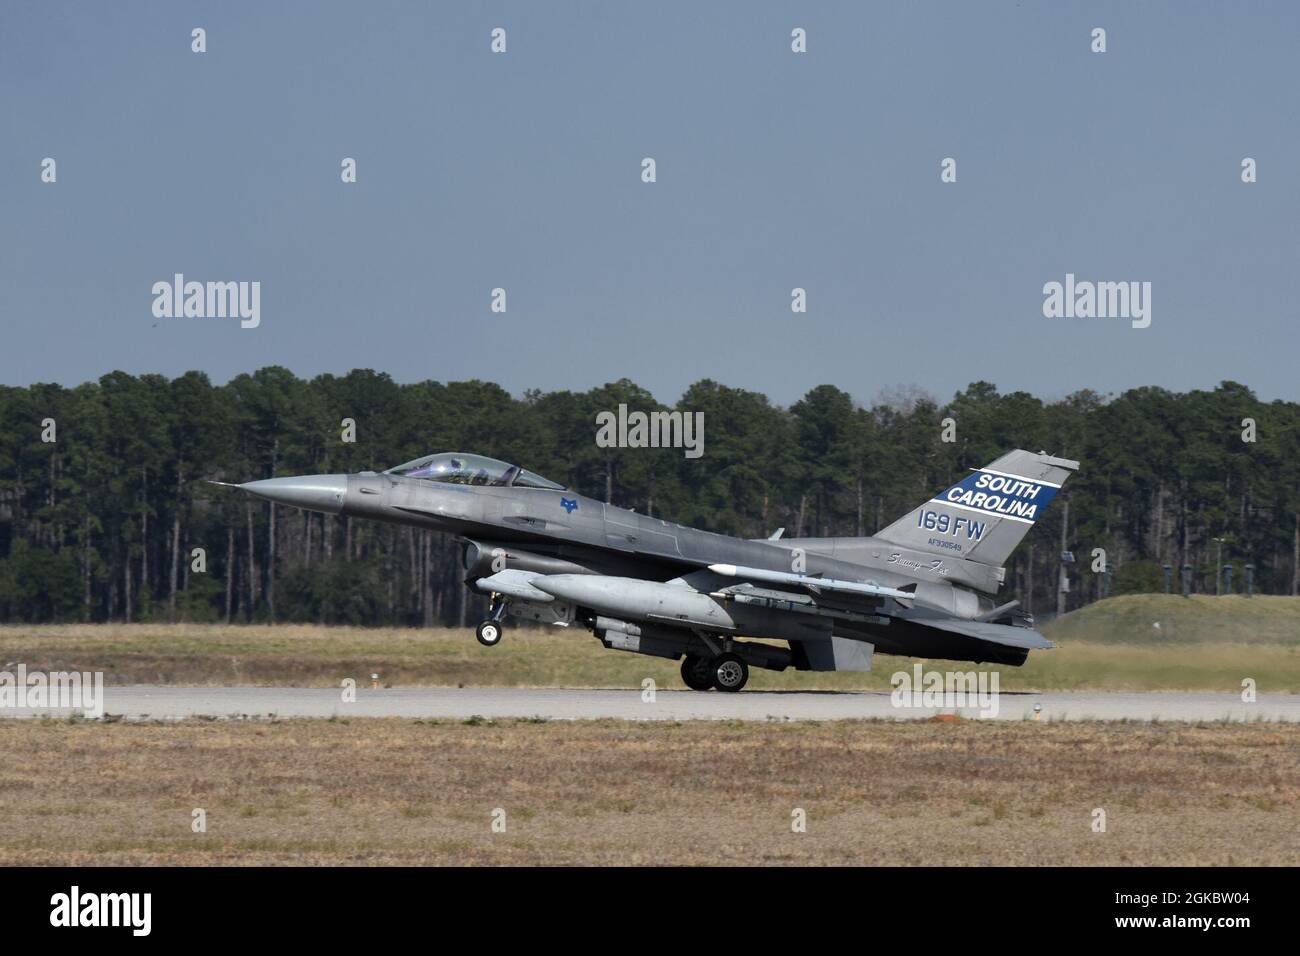 Les F-16 de la U.S. Air Force Fighting Falcon affectés à la 169e Escadre Fighter de la Garde nationale de l'Air de Caroline du Sud retournent à la base de la Garde nationale interarmées de McEntyre, en Caroline du Sud après avoir terminé une mission d'entraînement, le 6 mars 2021. Banque D'Images